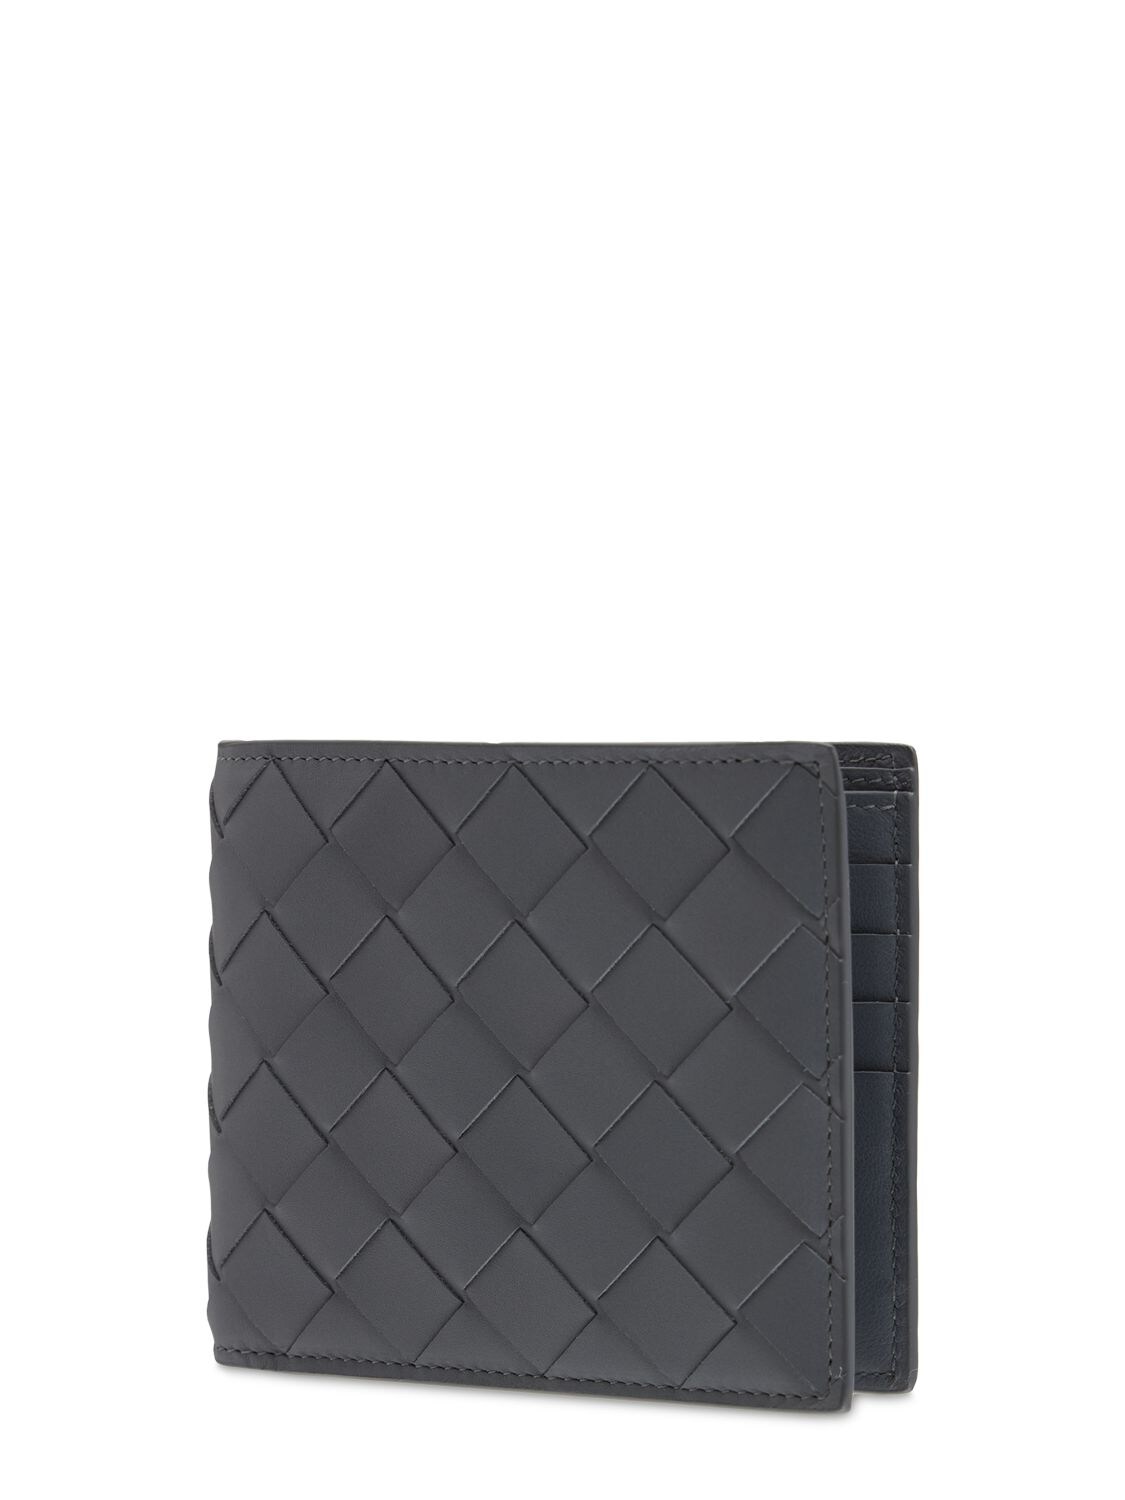 Shop Bottega Veneta Intrecciato Leather Bi-fold Wallet In Thunder